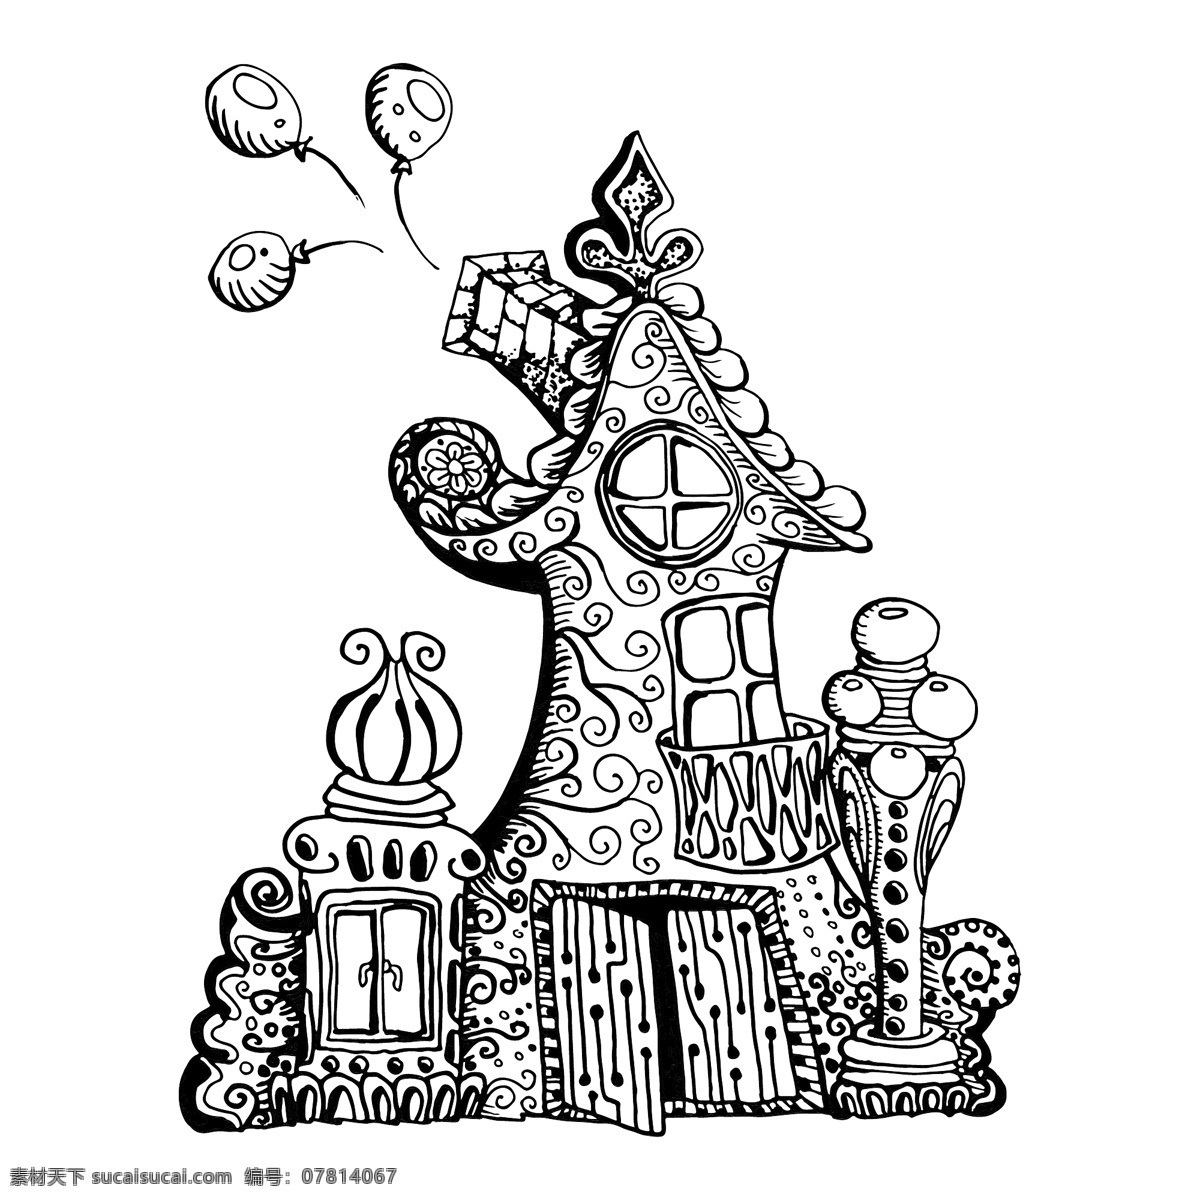 原版 手绘 涂鸦 式 仙女 屋 插图 背景 矢量 着色 绘制 乐趣 房子 手 孩子 城堡 林